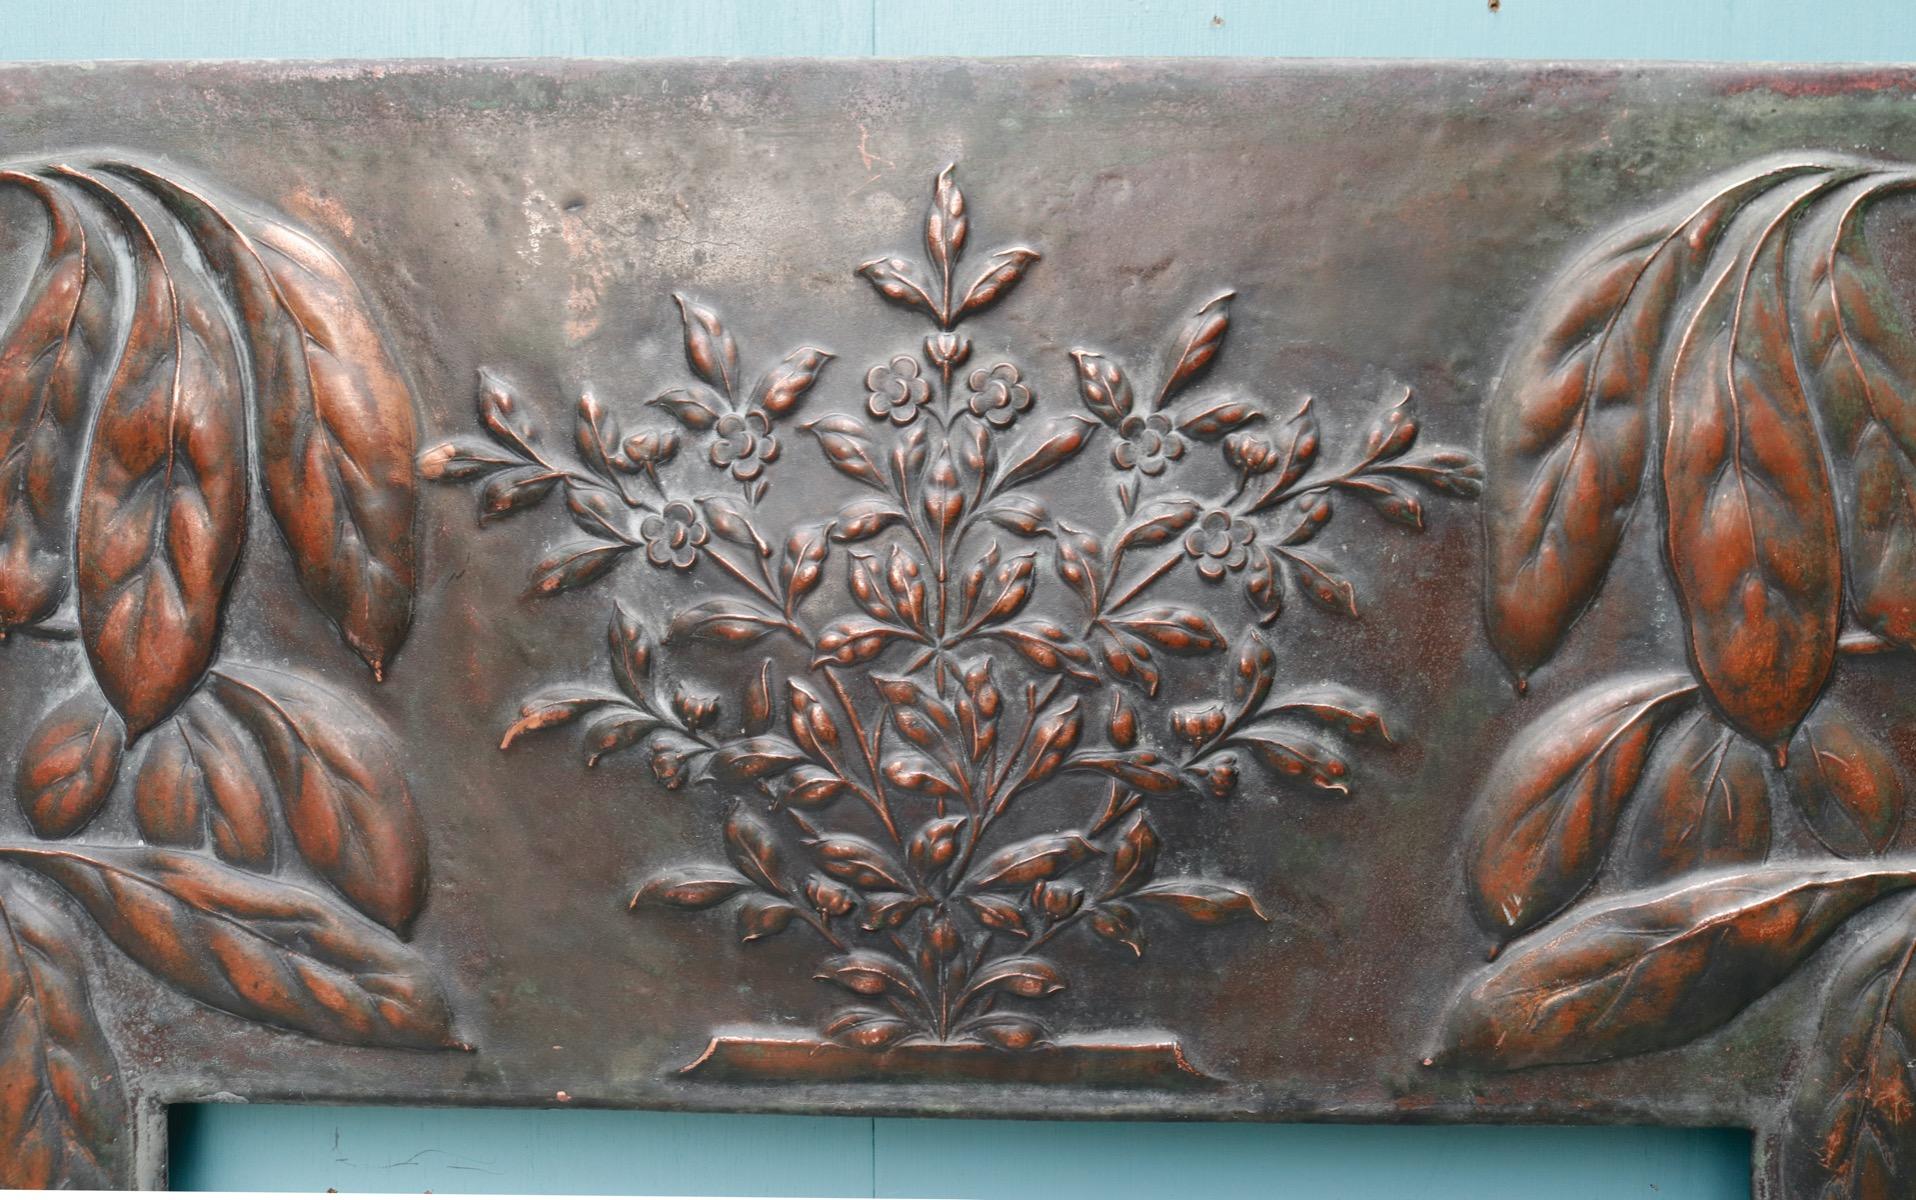 Un insert de cheminée en cuivre de style Arts and Crafts récupéré avec une décoration de feuillage repoussé.

Dimensions supplémentaires

Hauteur d'ouverture 76 cm

Largeur d'ouverture 49 cm.